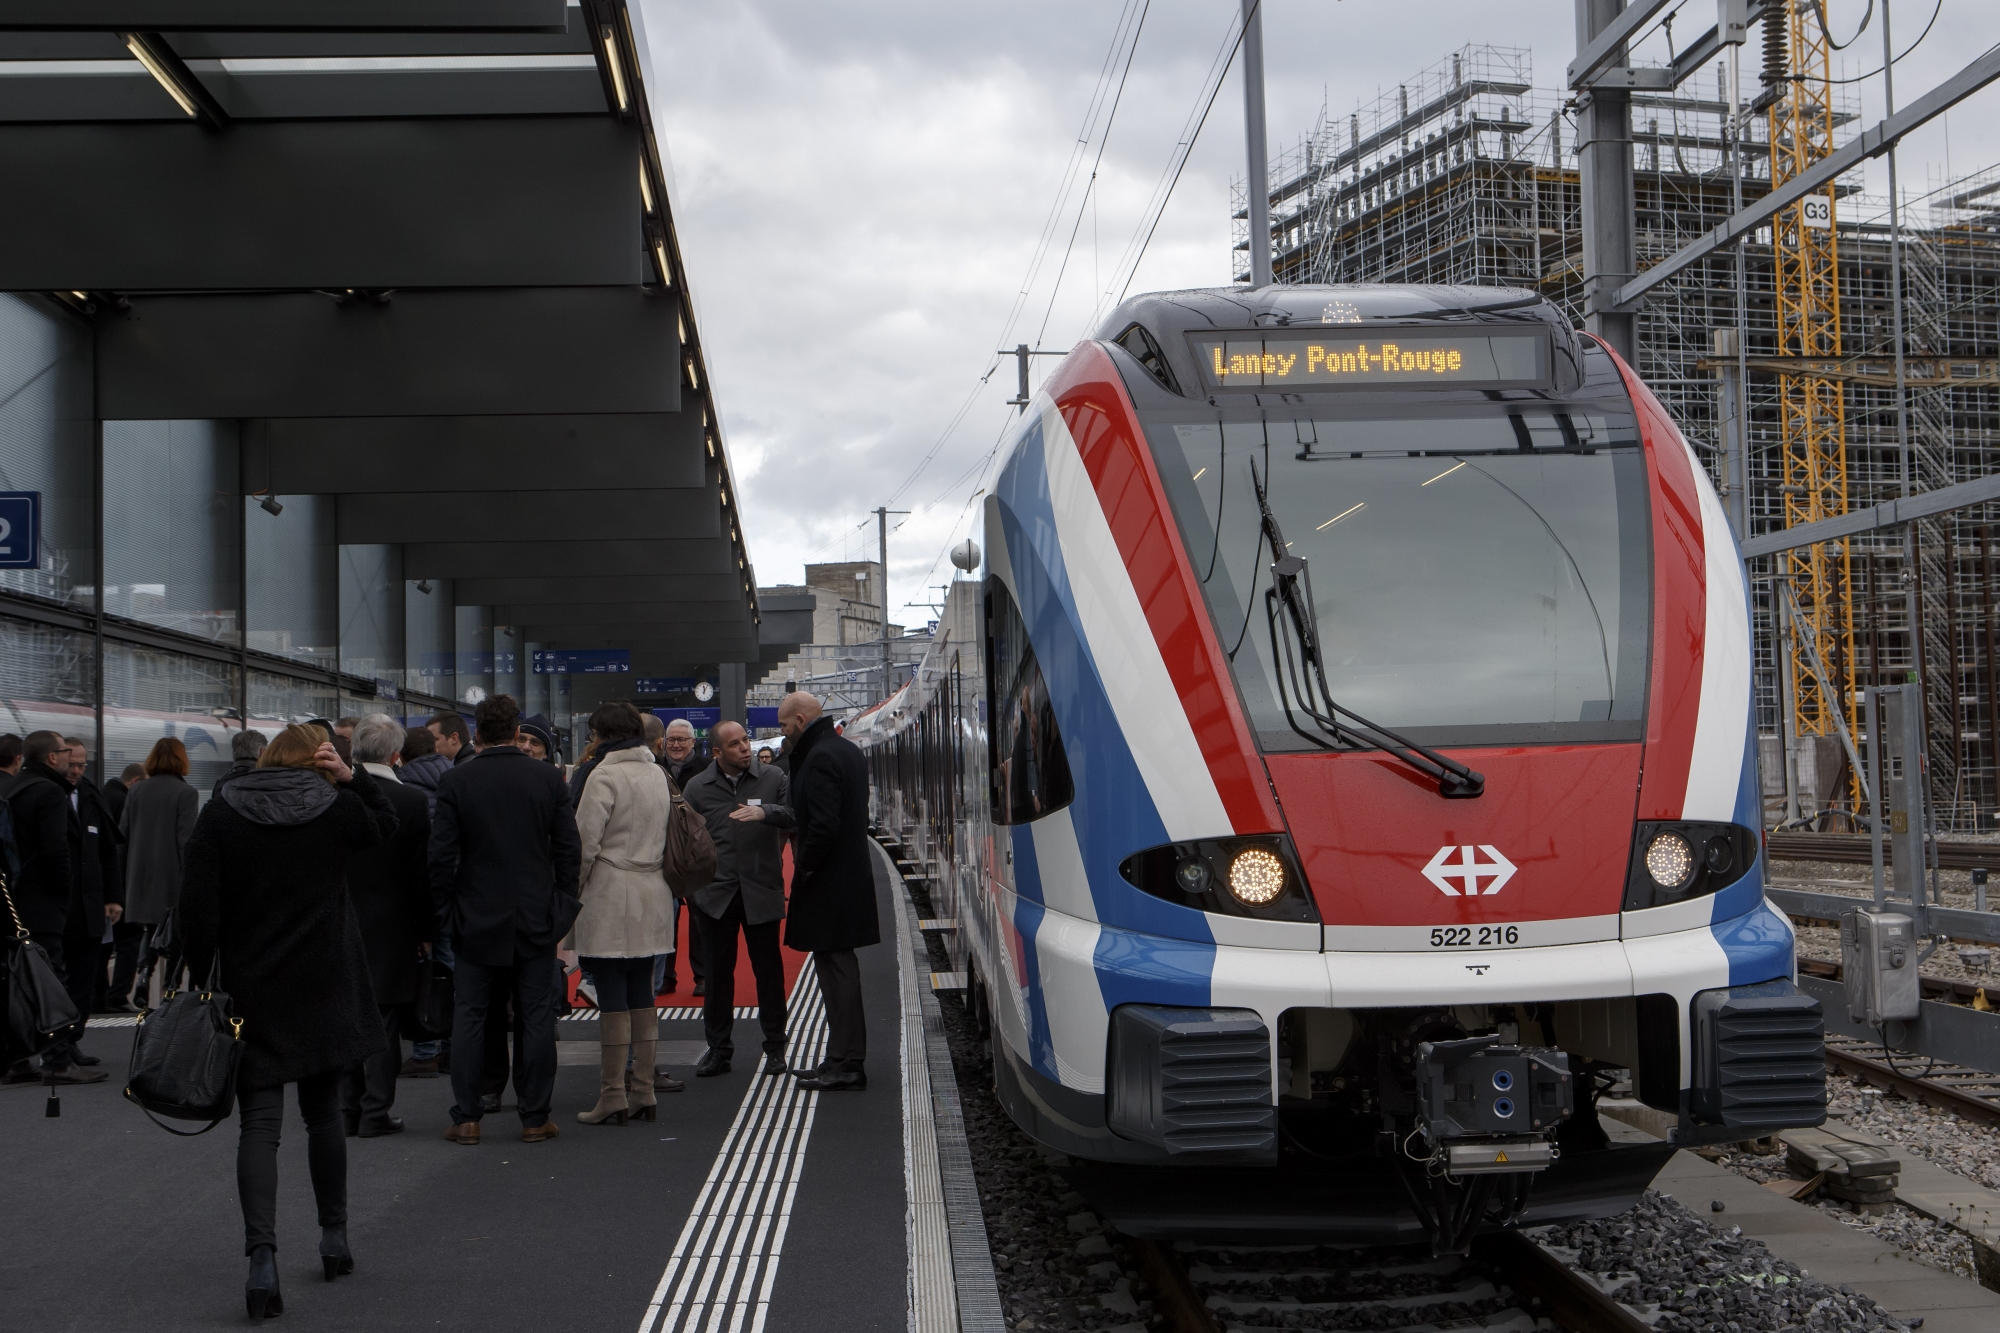 Les invites deambulent sur le quai, lors de l'inauguration de la gare Lancy-Pont-Rouge, ce vendredi 8 decembre 2017 a Lancy pres de Geneve. (KEYSTONE/Salvatore Di Nolfi)